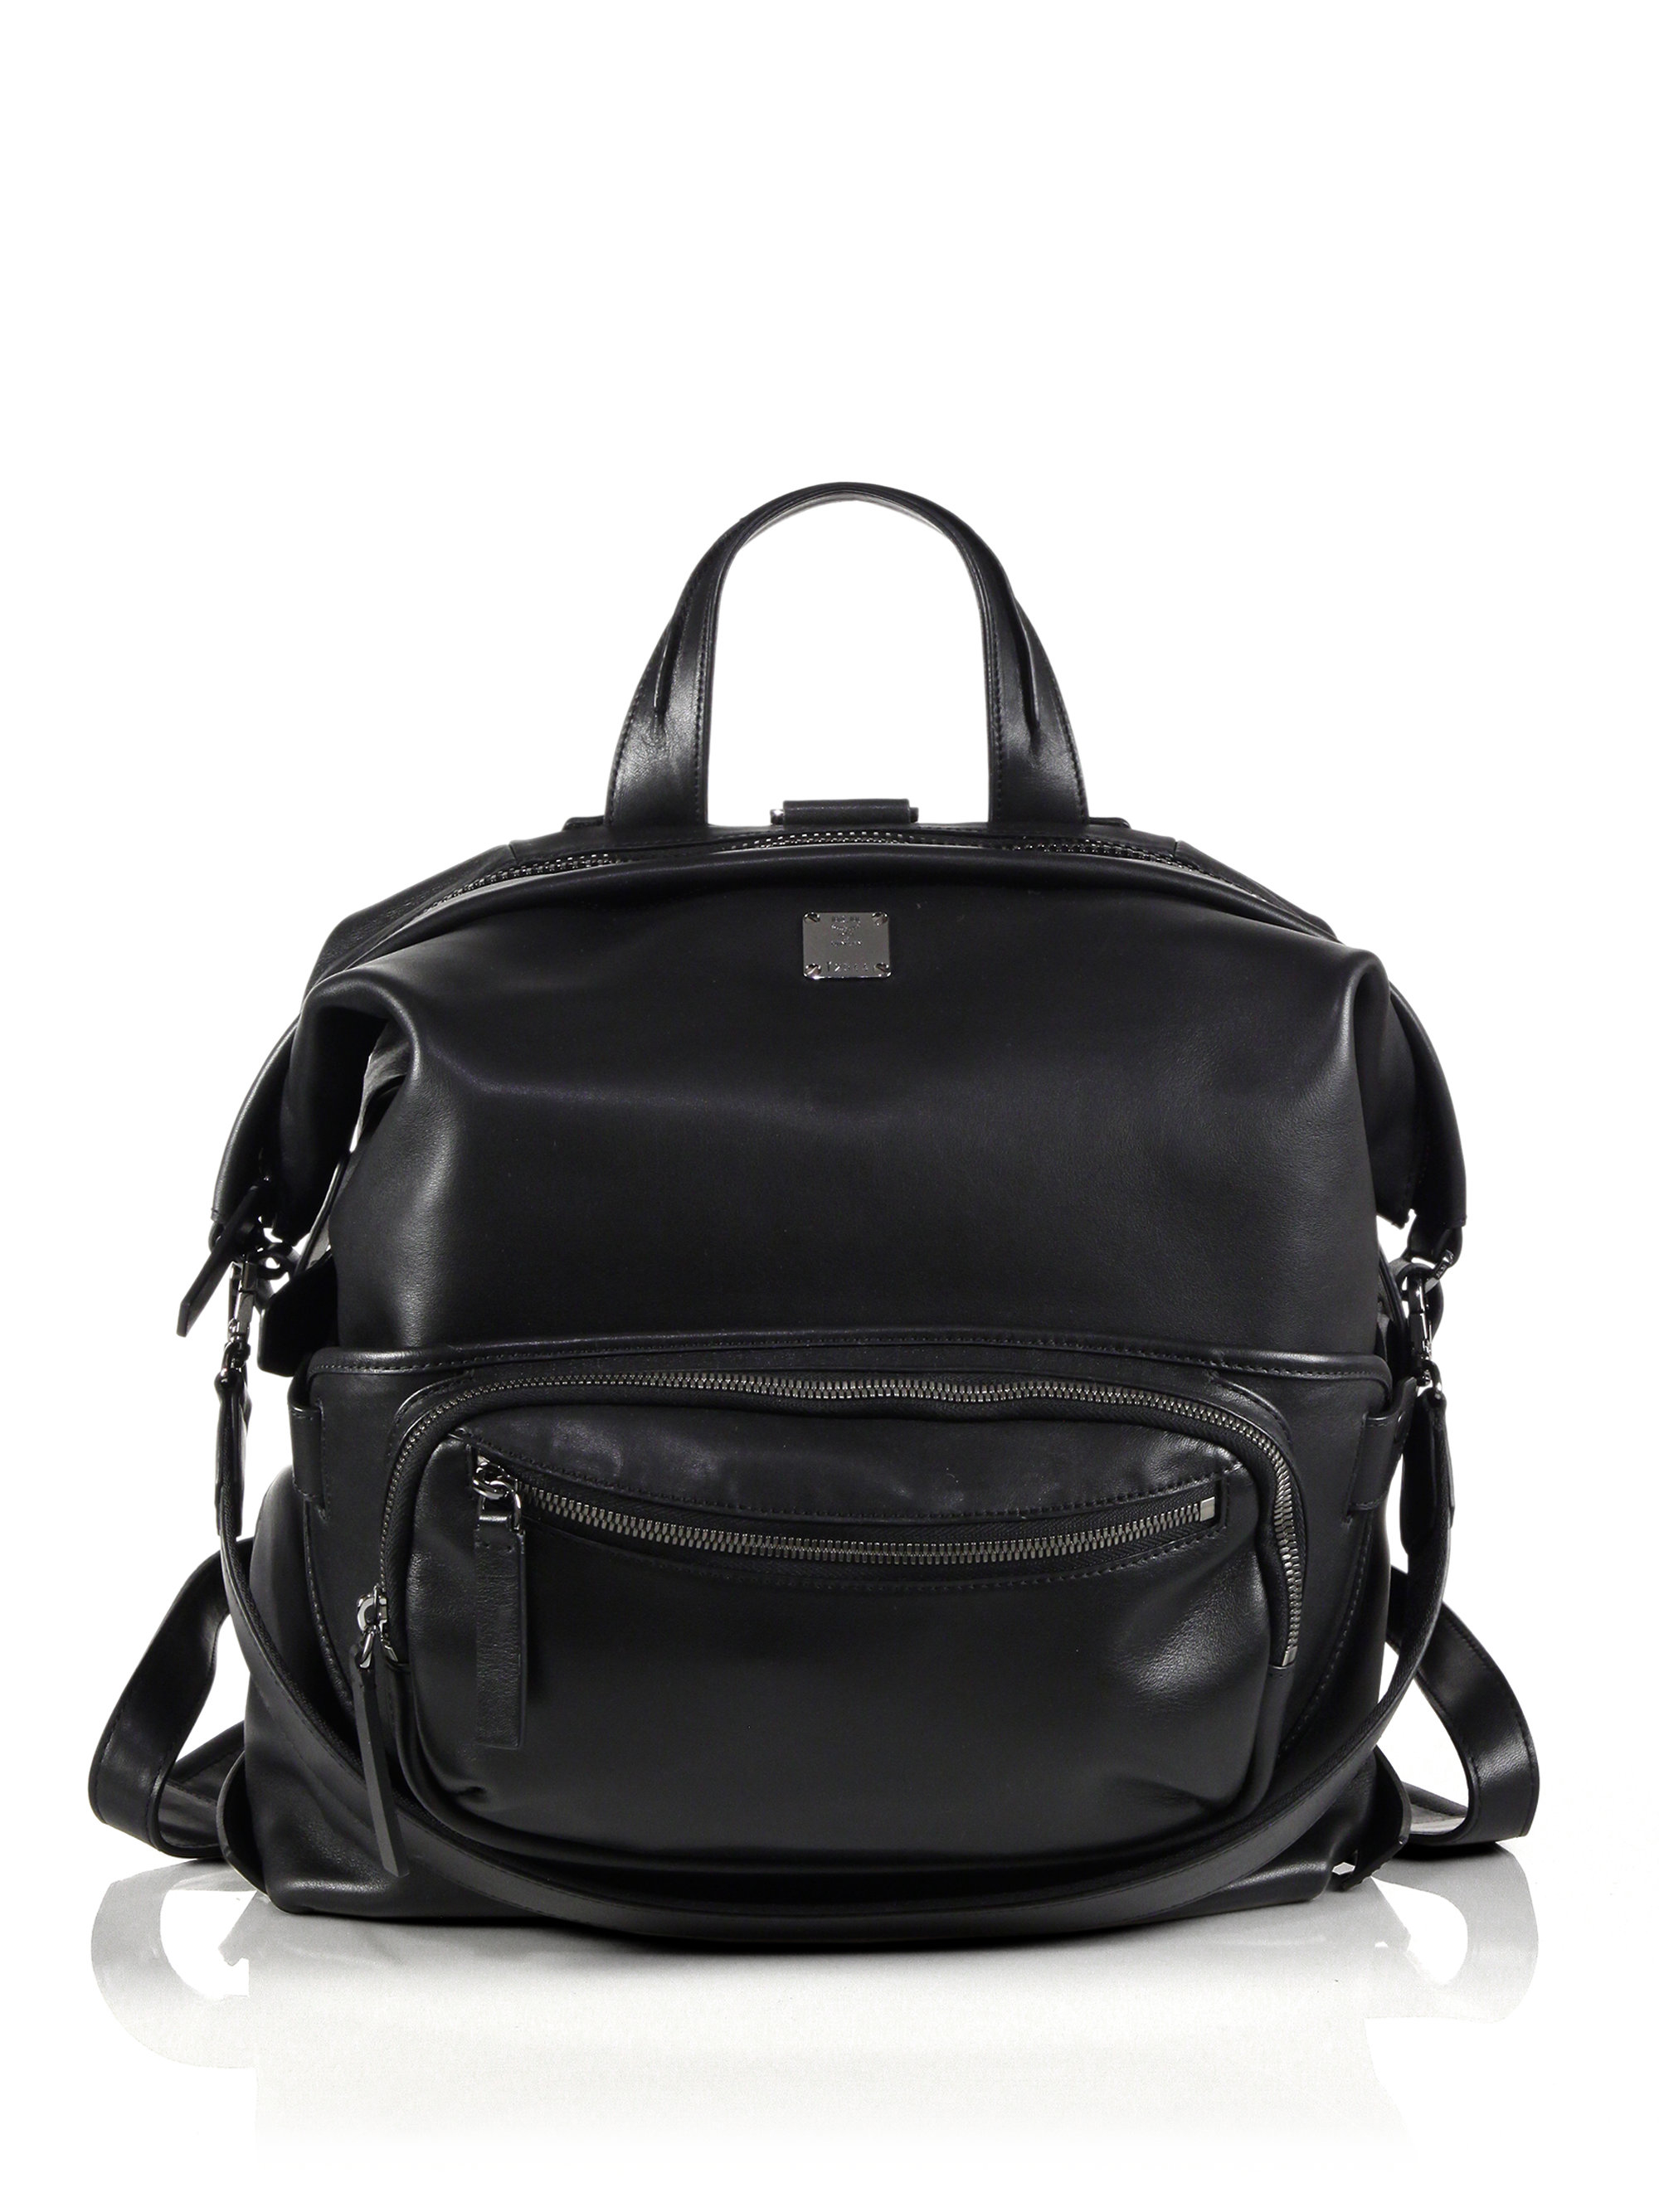 Lyst - Mcm Transformer Leather Backpack in Black for Men